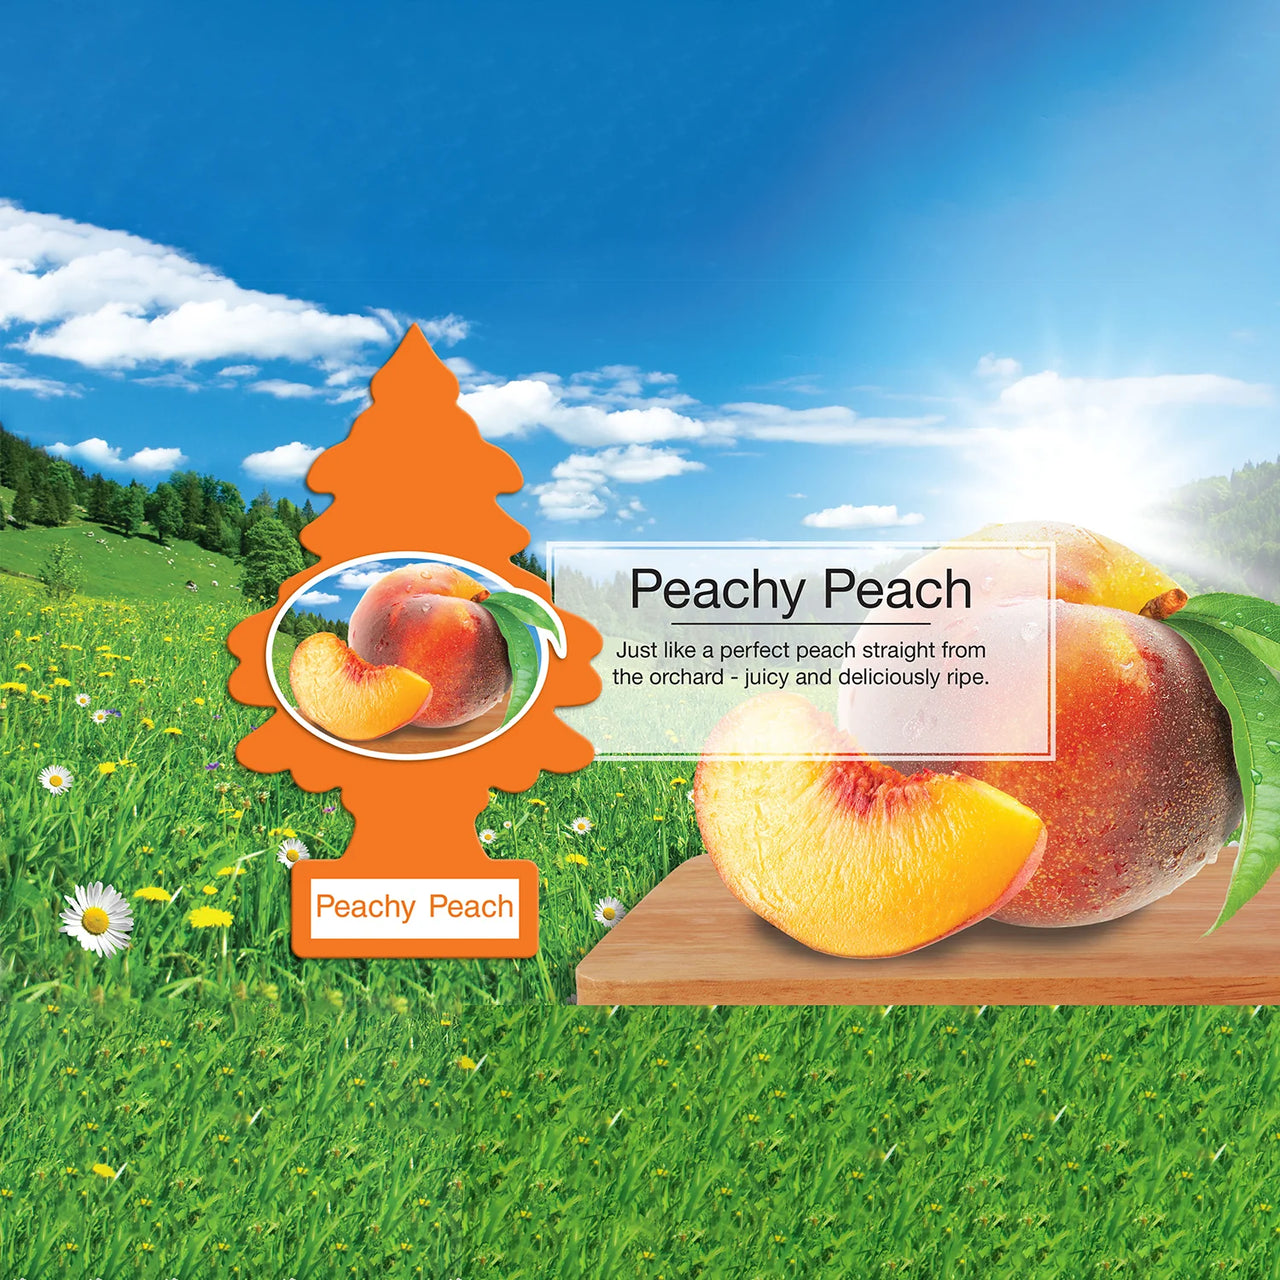 LITTLE TREES-Peachy Peach-1 piece